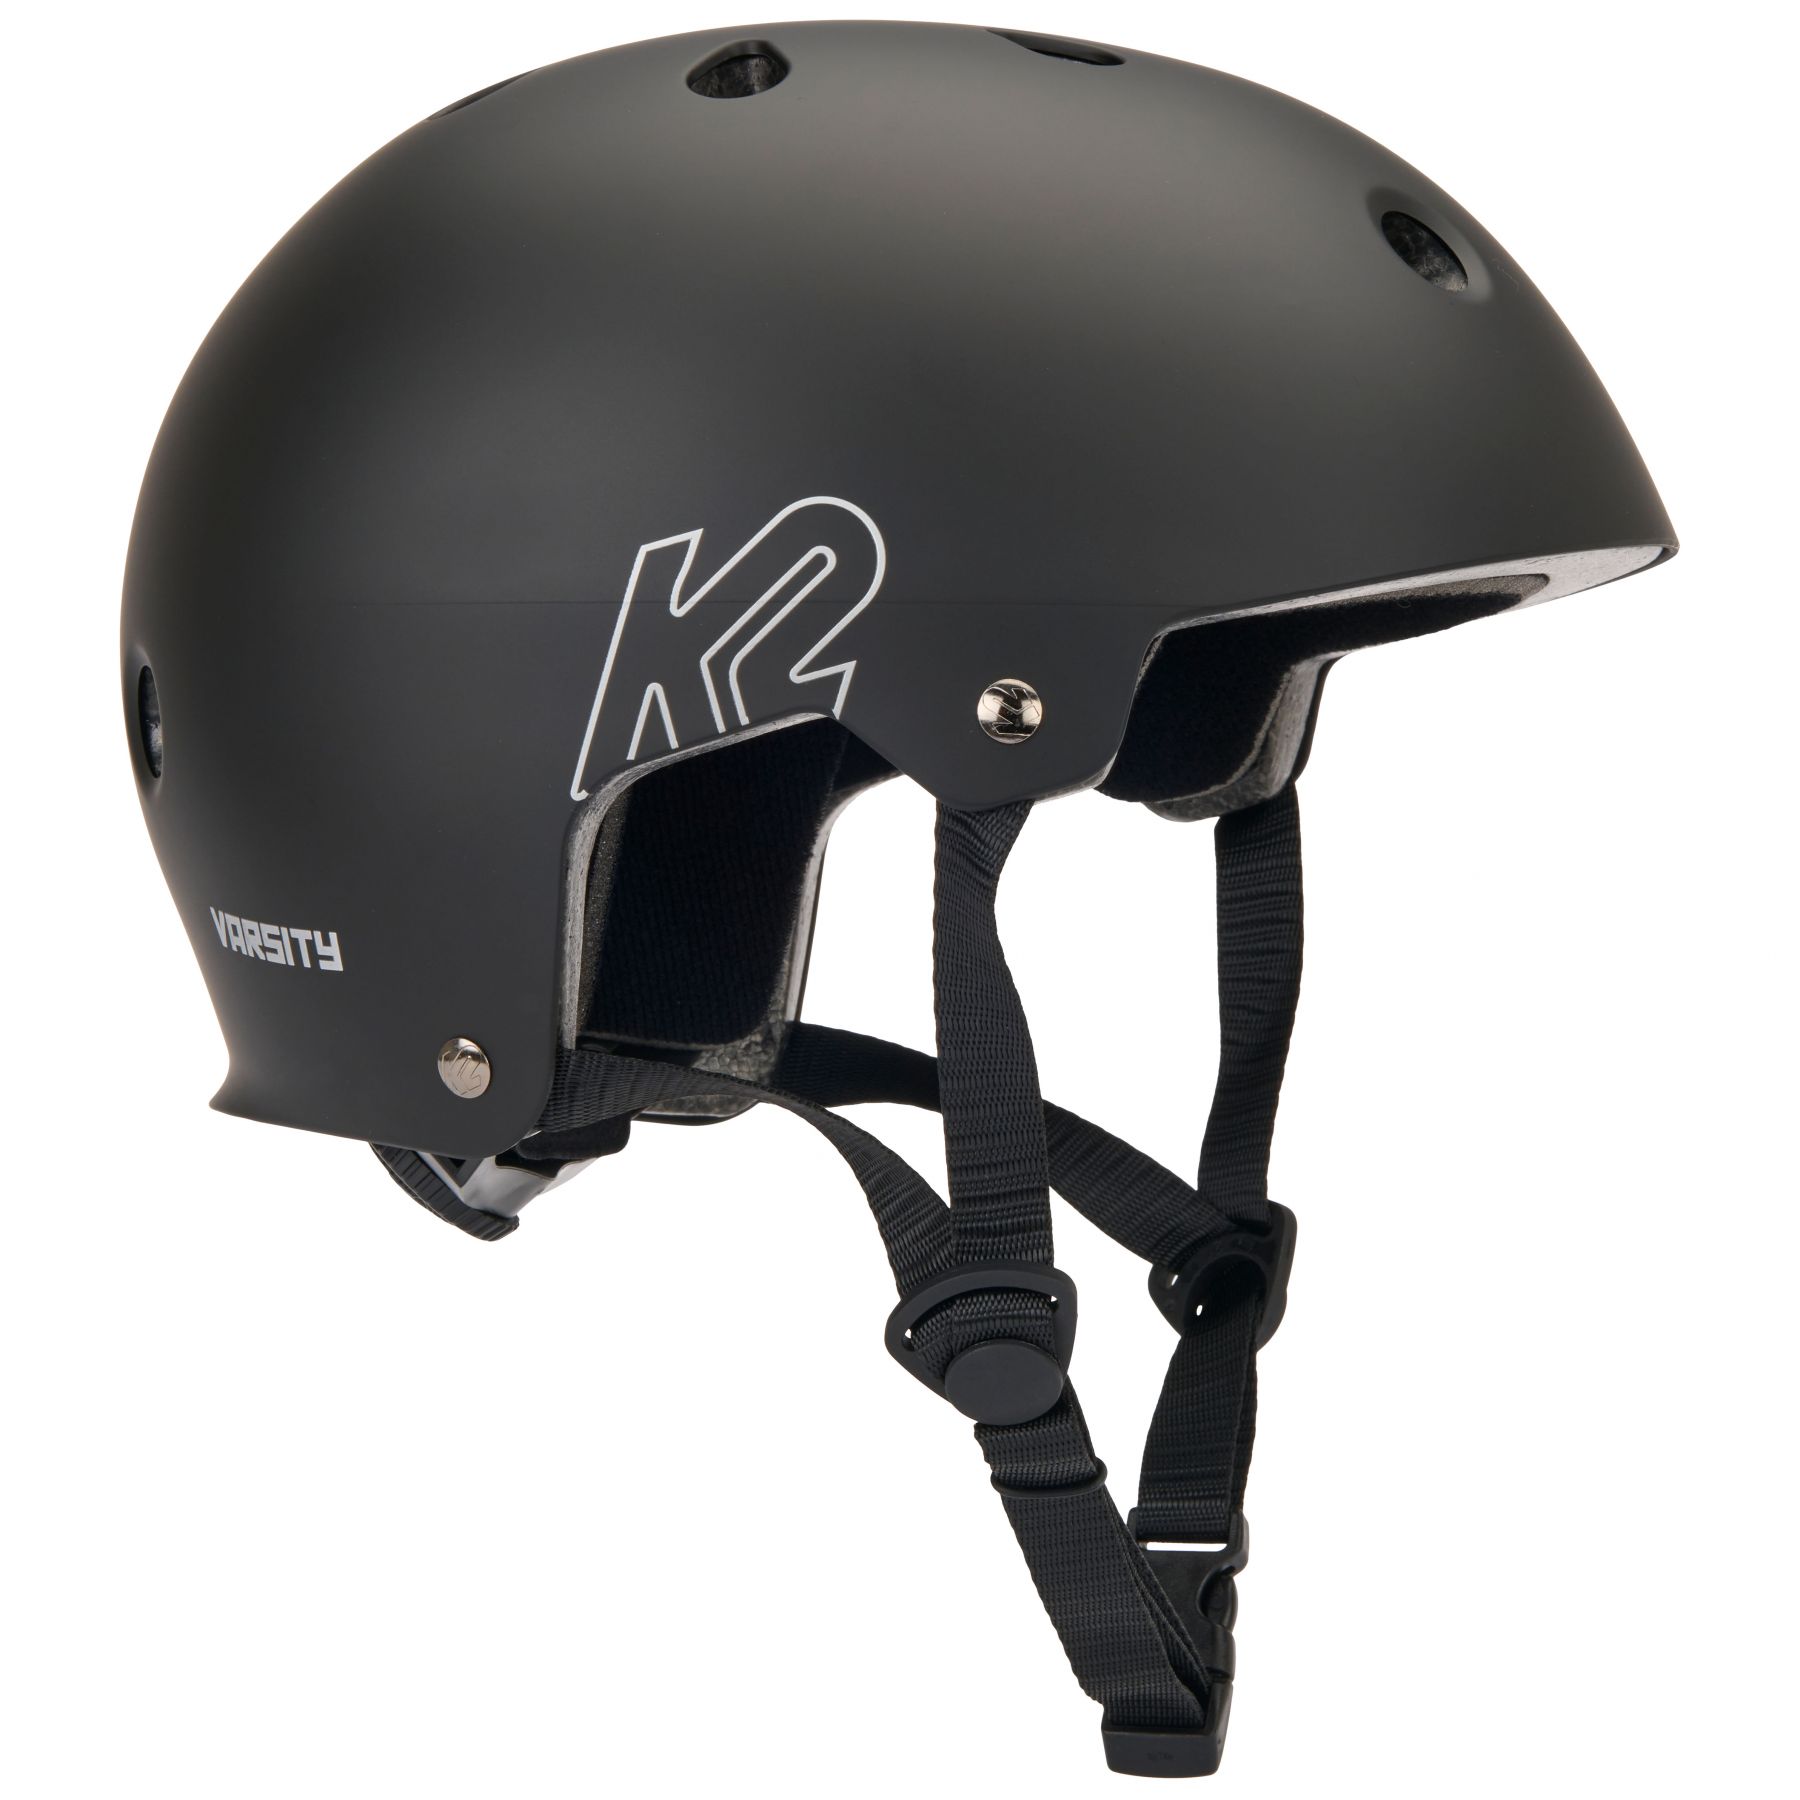 Brug K2 Varsity, hjelm, sort til en forbedret oplevelse